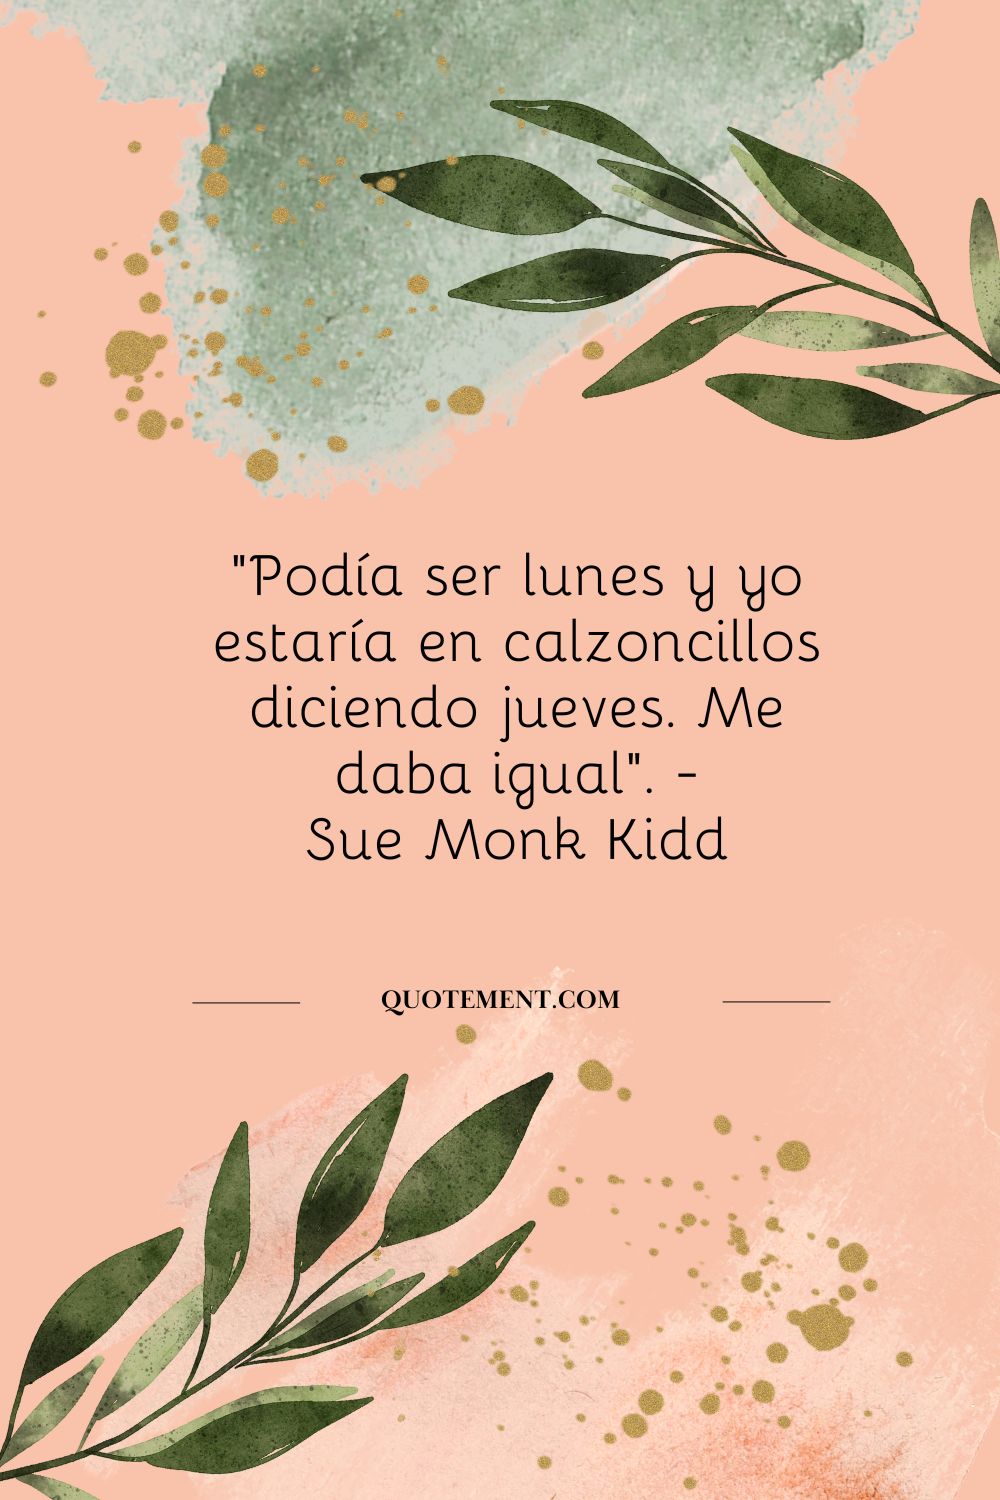 "Podía ser lunes y yo estaría en calzoncillos diciendo jueves. Me daba igual". - Sue Monk Kidd